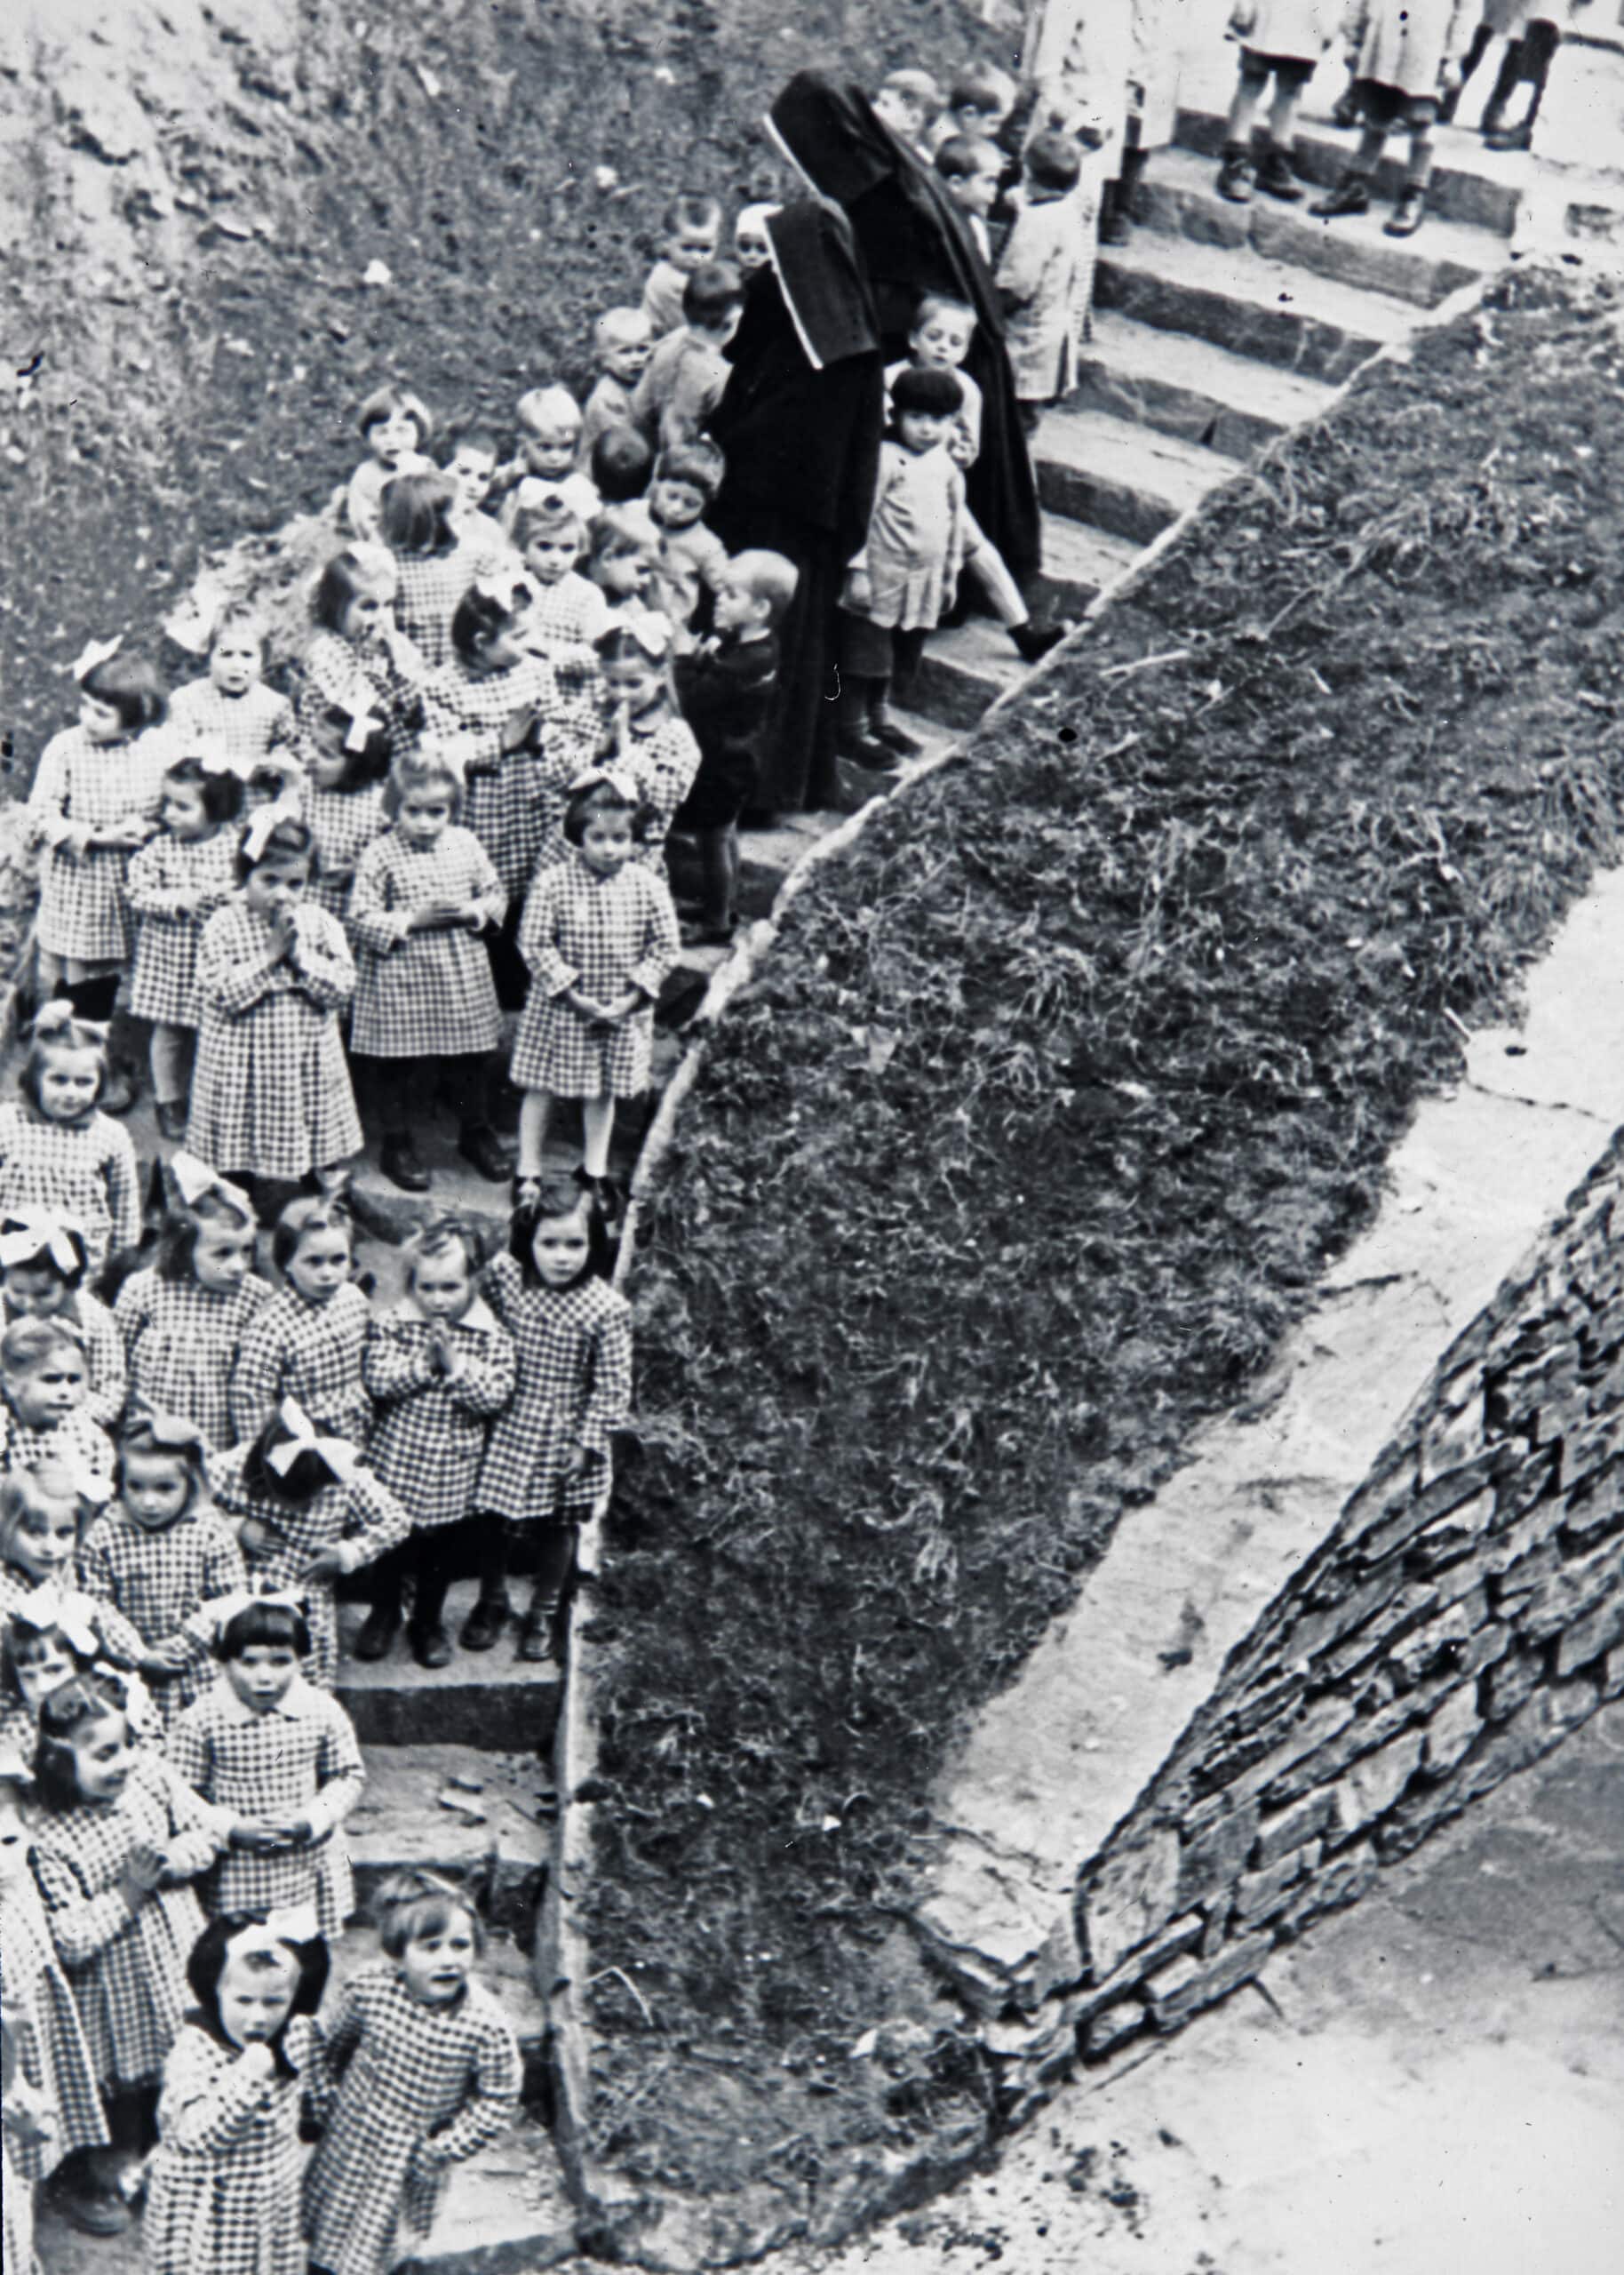 Две монахини и воспитанники детского дома в Вале, около 1930-1940 гг. (© Paul Cattani)